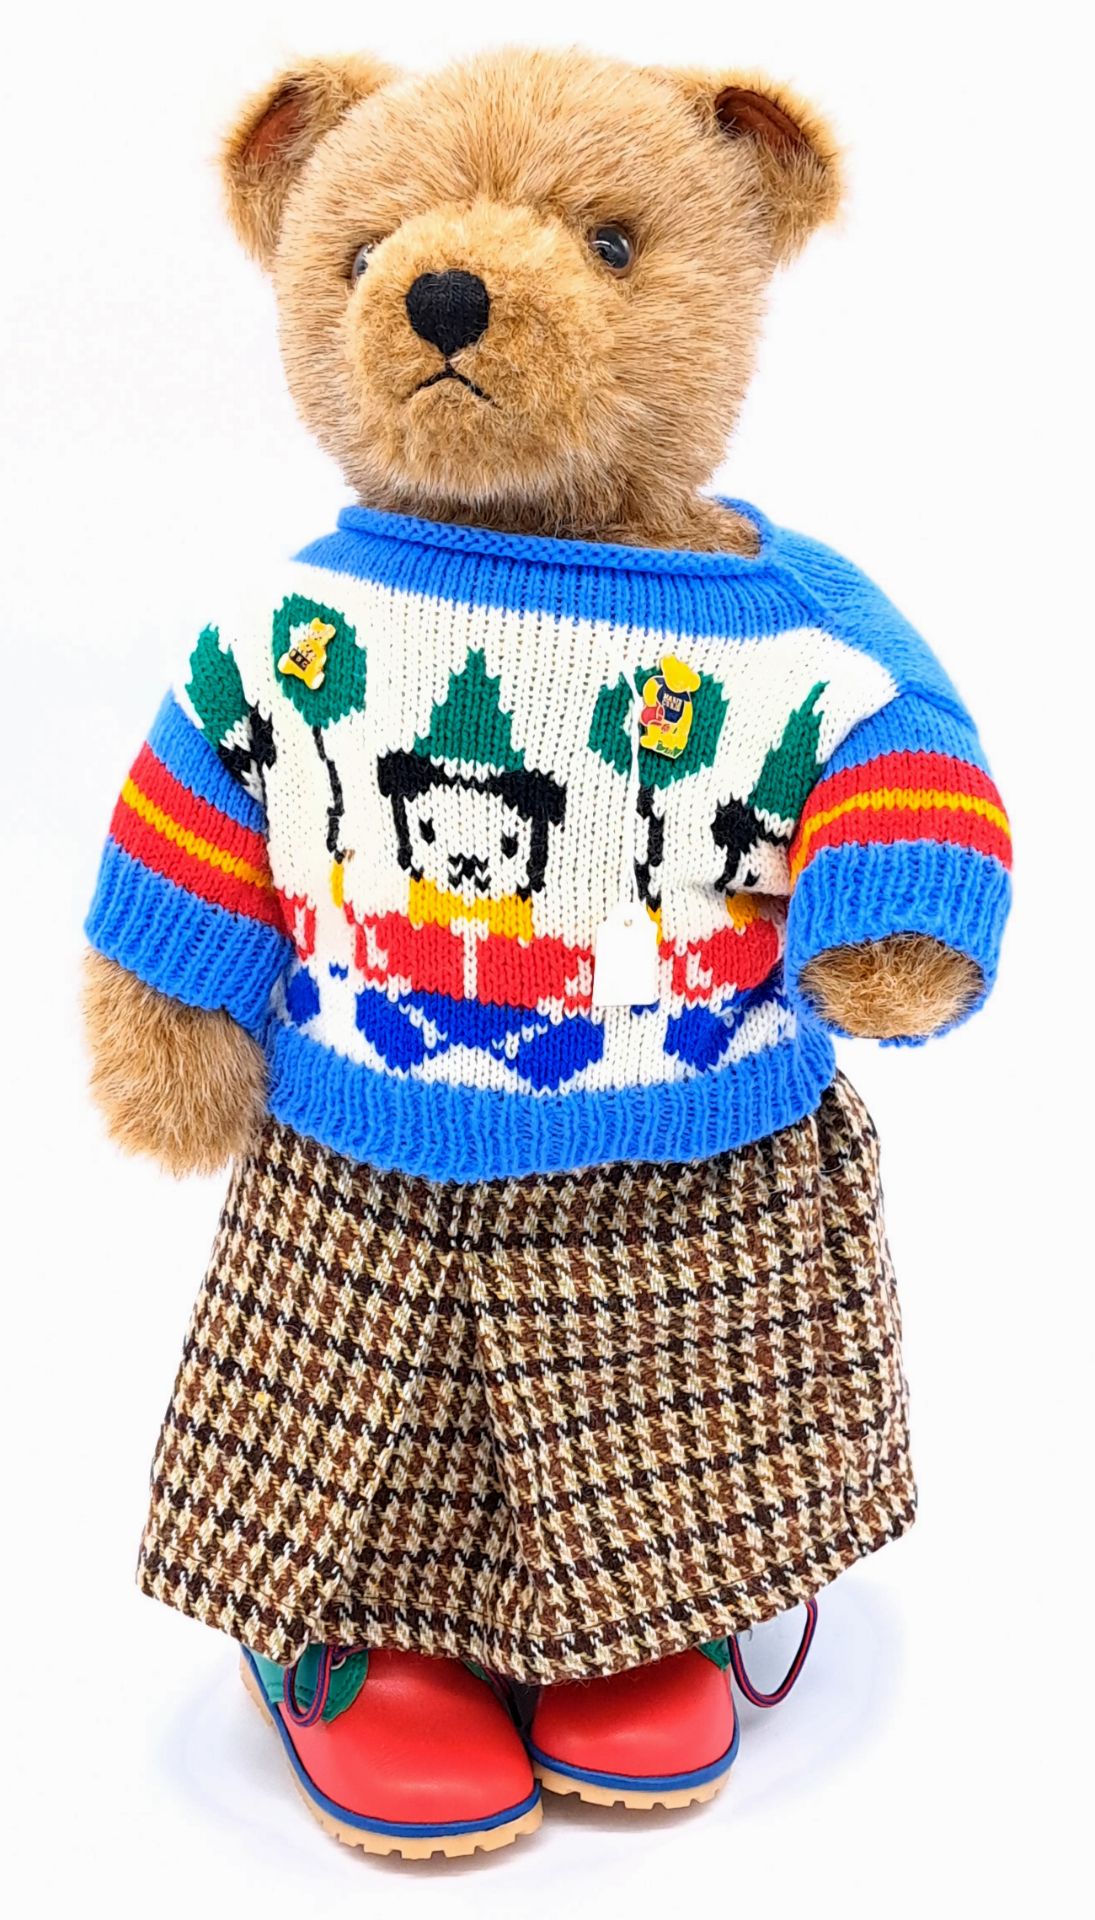 Dean's Rag Book Lakeland Bears (UK) vintage teddy bear